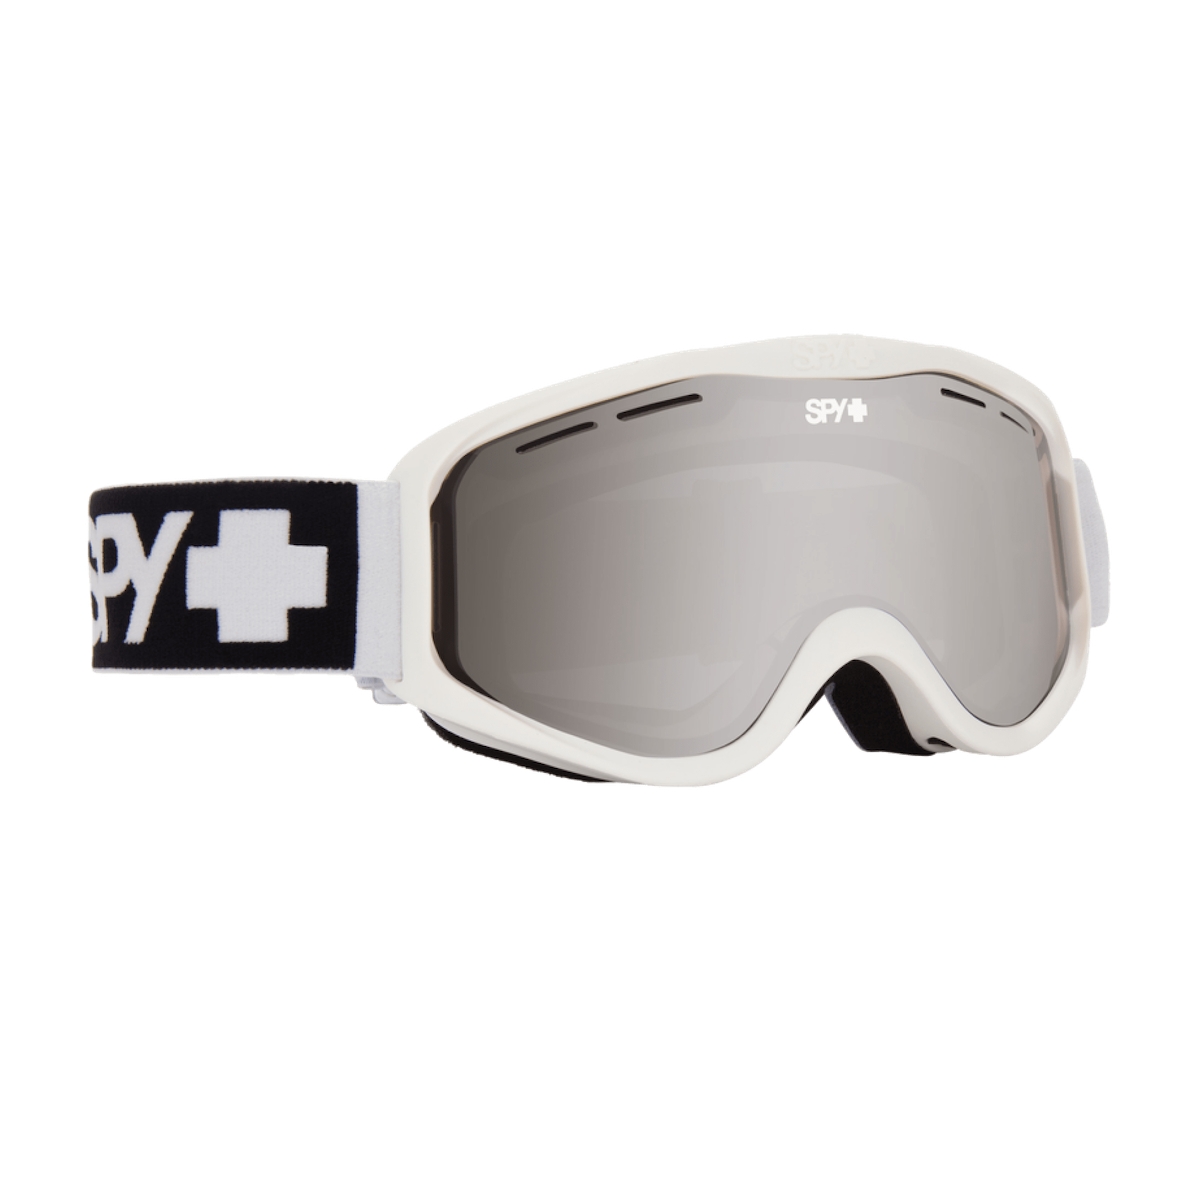 SPY CADET SNOW goggles - matte white